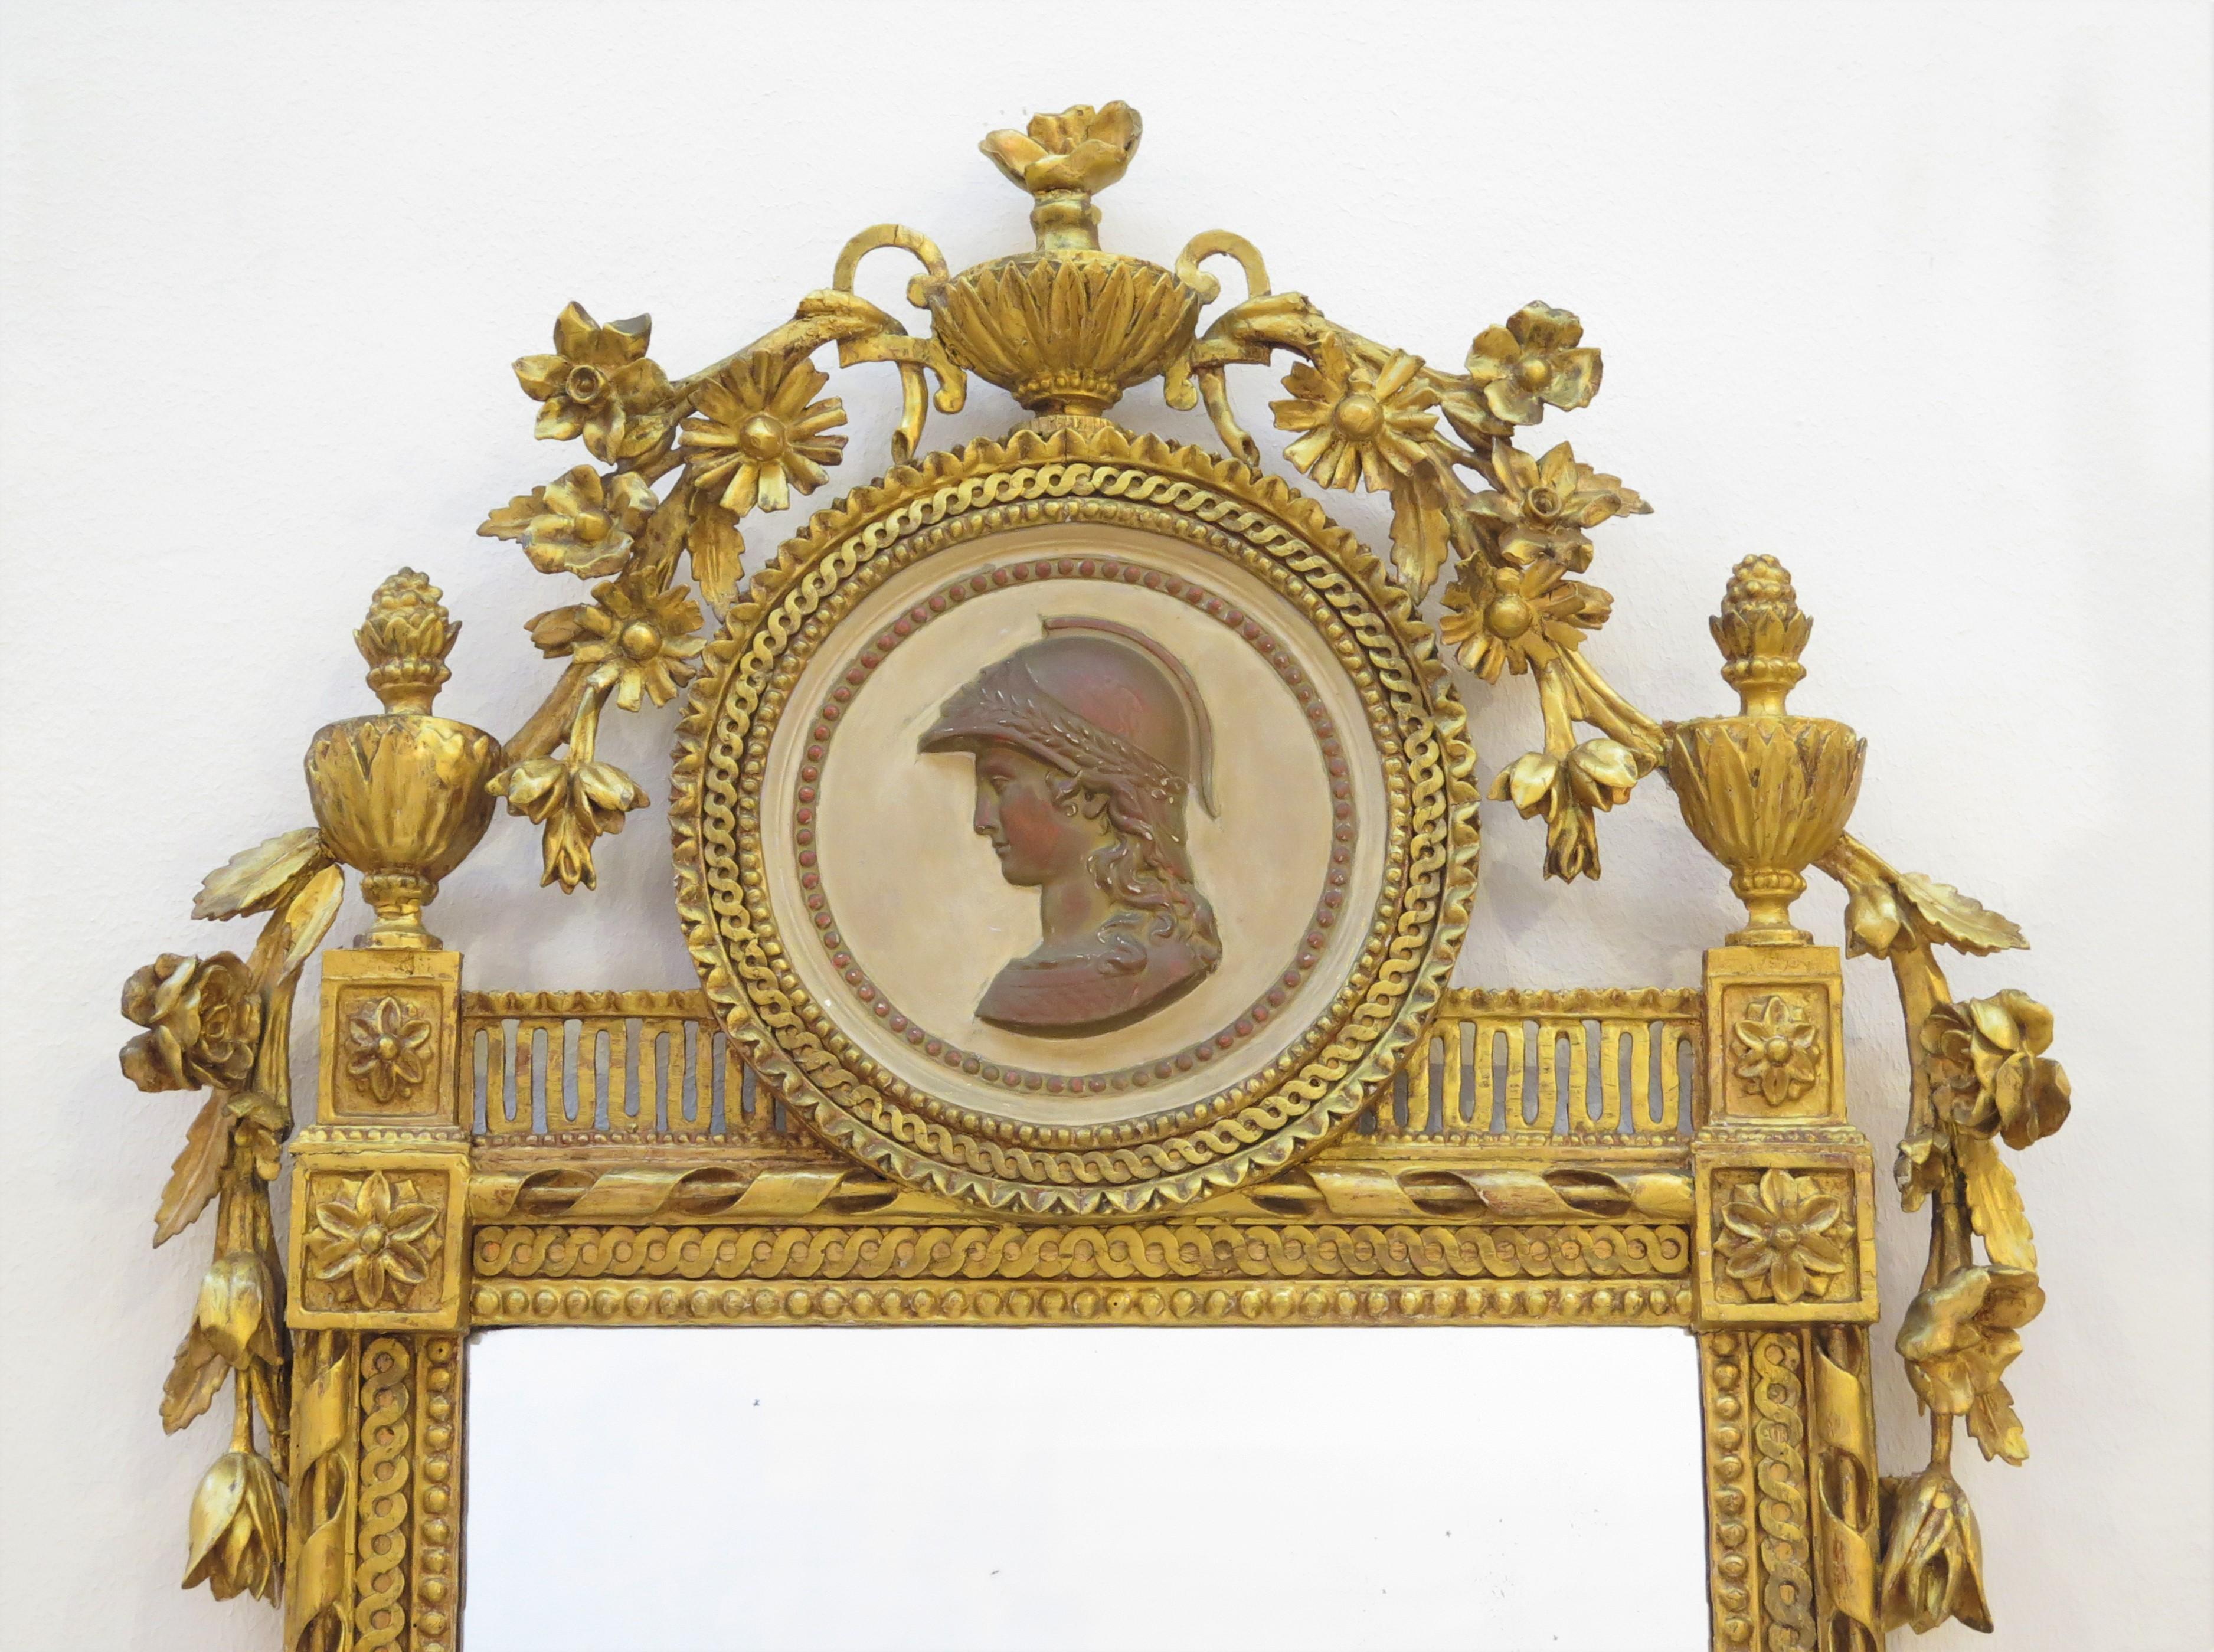 un miroir néoclassique en bois doré orné d'un médaillon rond en bas-relief (couleur terre cuite) représentant un soldat romain, surmonté et flanqué d'urnes feuillues et de vignes fleuries (avec des feuilles) dans son cadre en bois doré très orné,